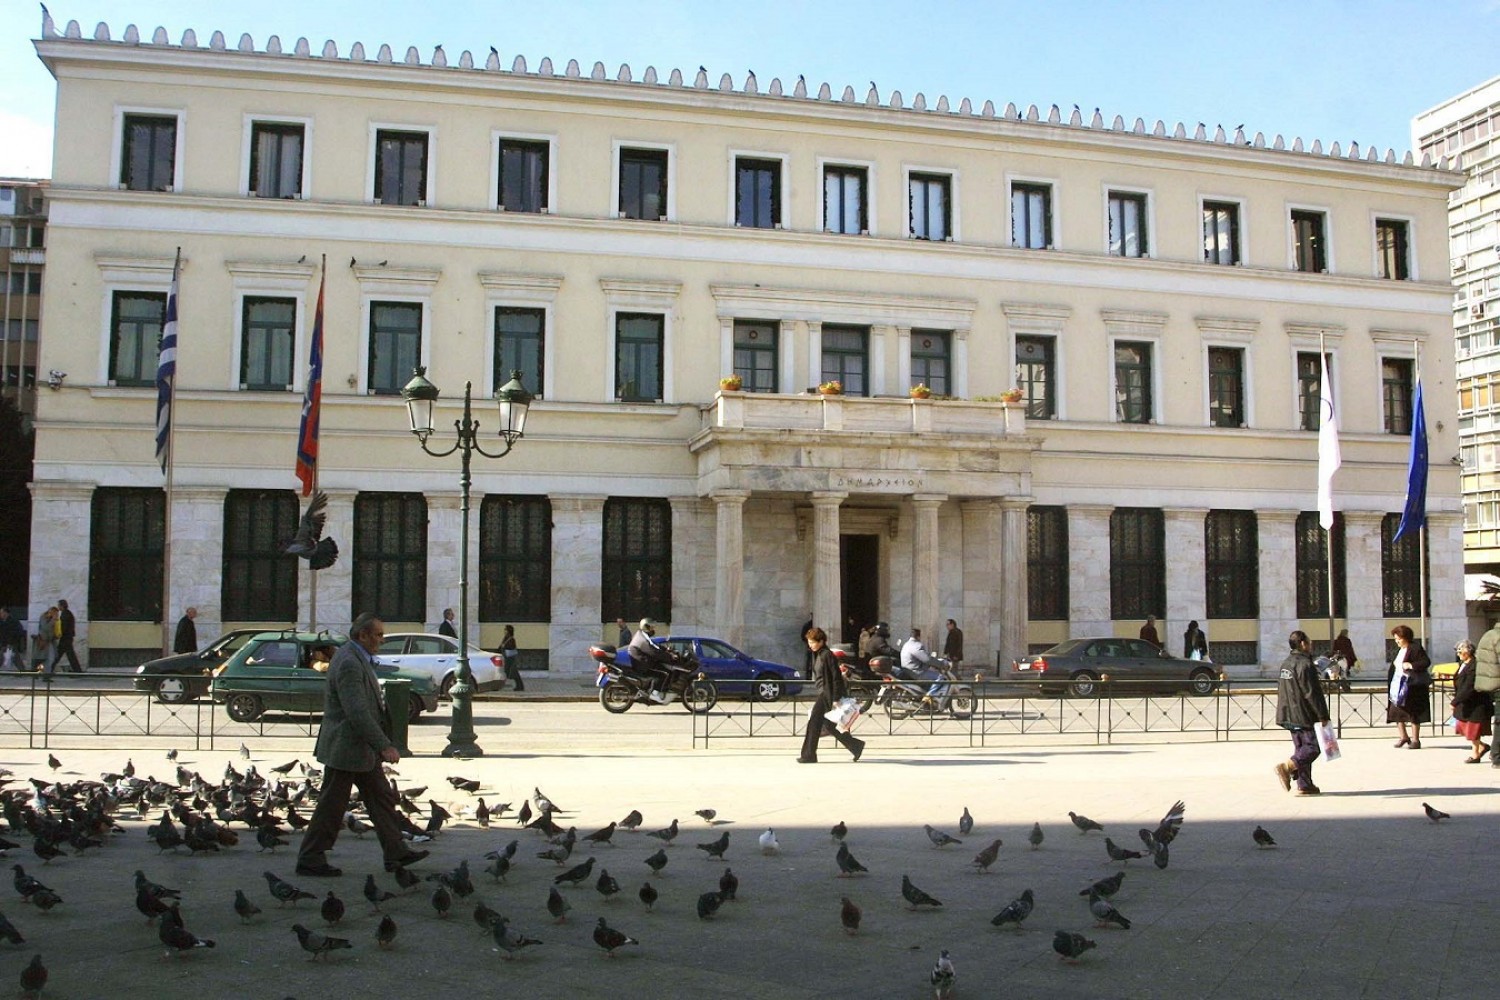 Δήμος Αθηναίων: Νέα μείωση το 2019 στα δημοτικά τέλη για καταστήματα και επιχειρήσεις